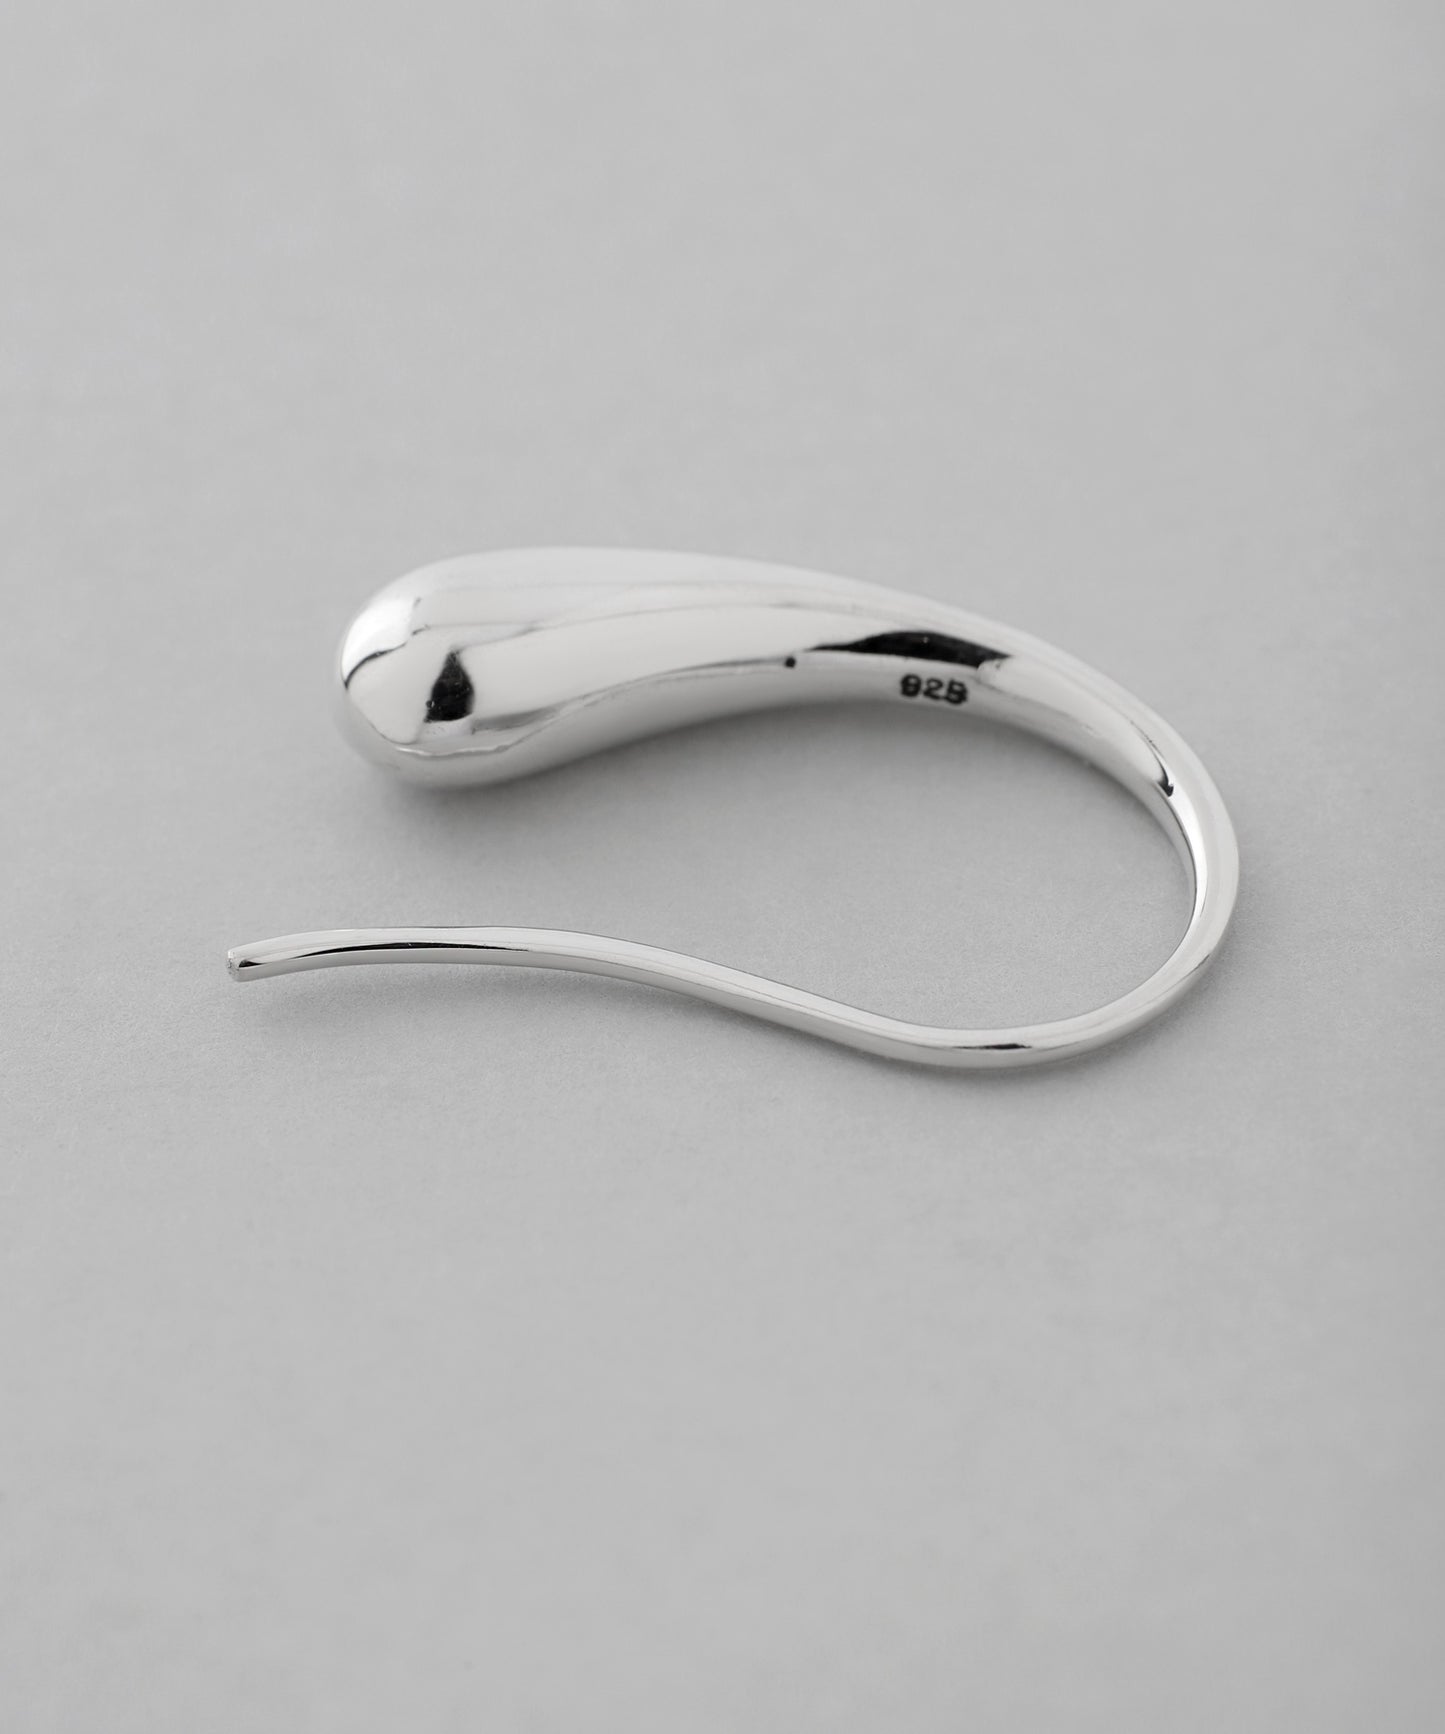 Drop Hook Earrings [925 silver]